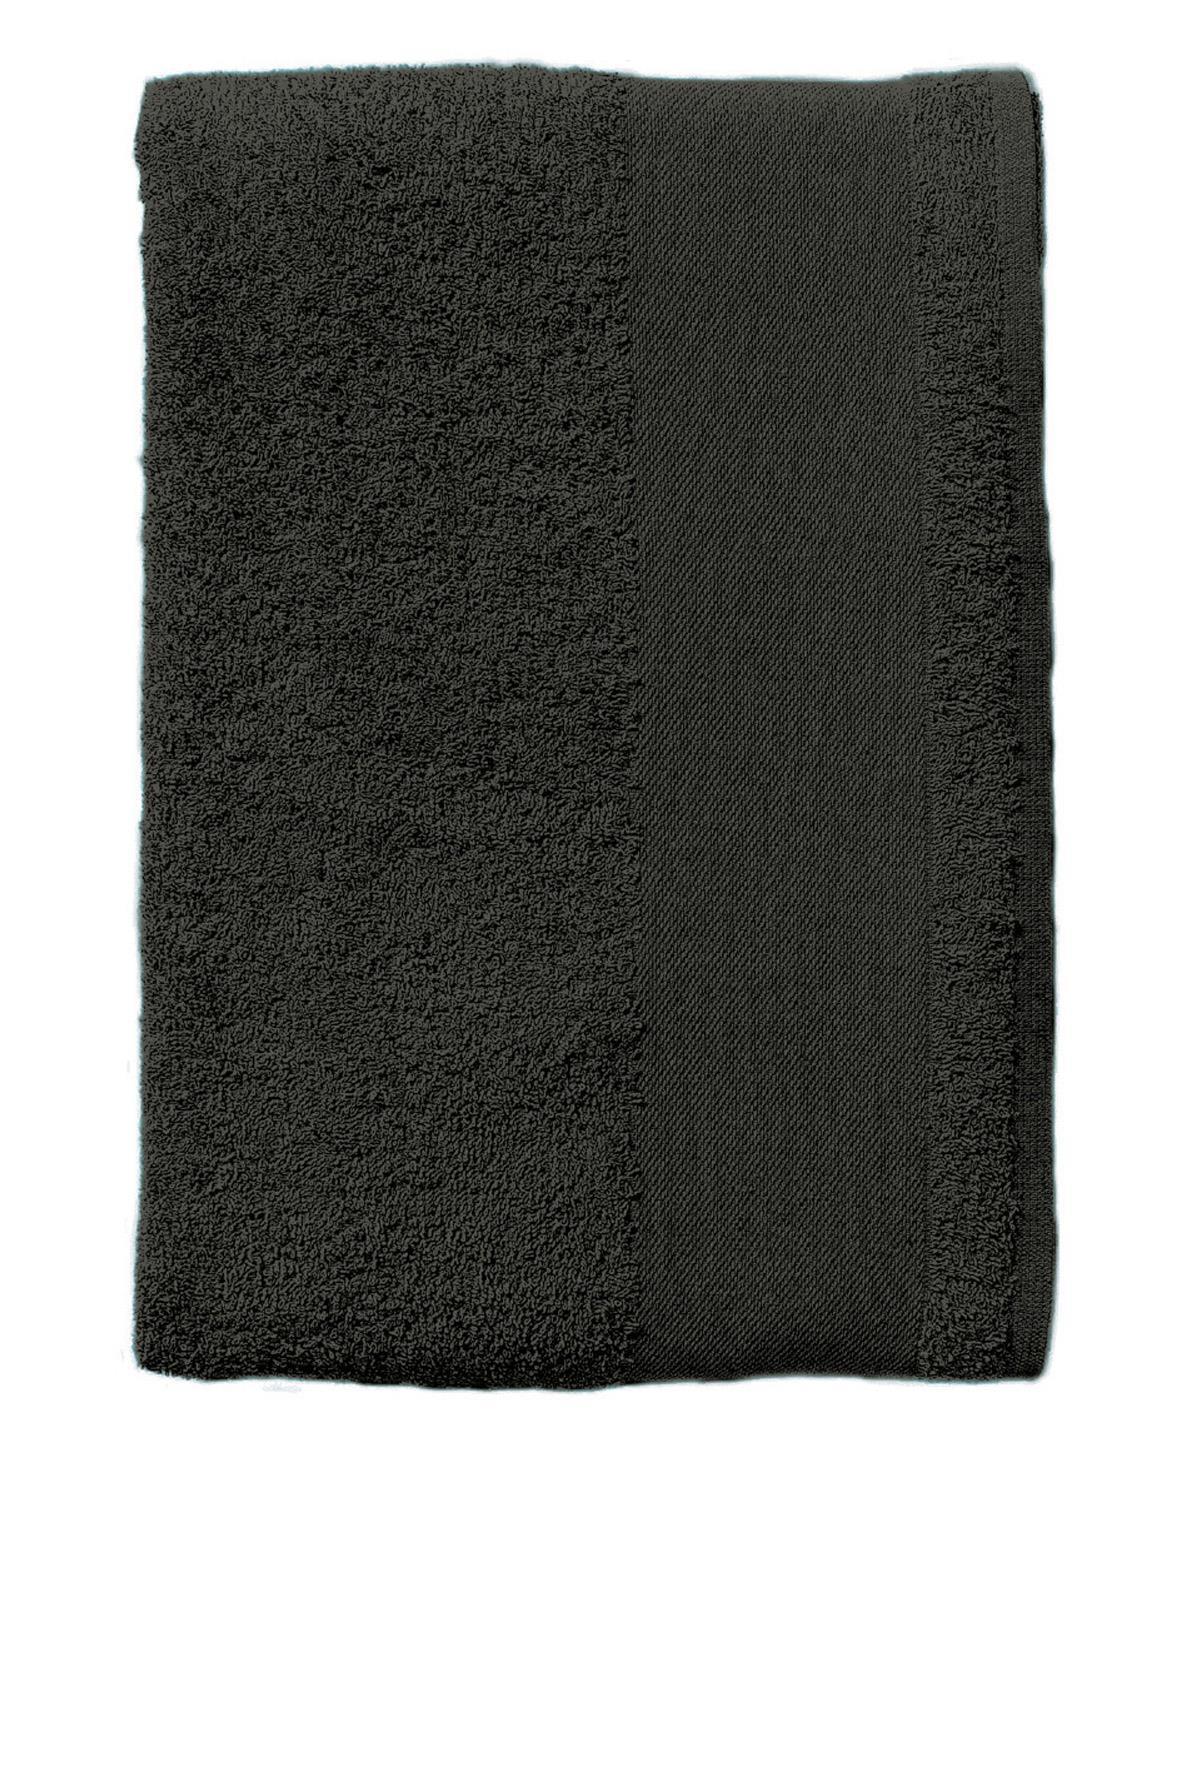 Handoeken  donker grijs handdoek diverse maten strandlaken.